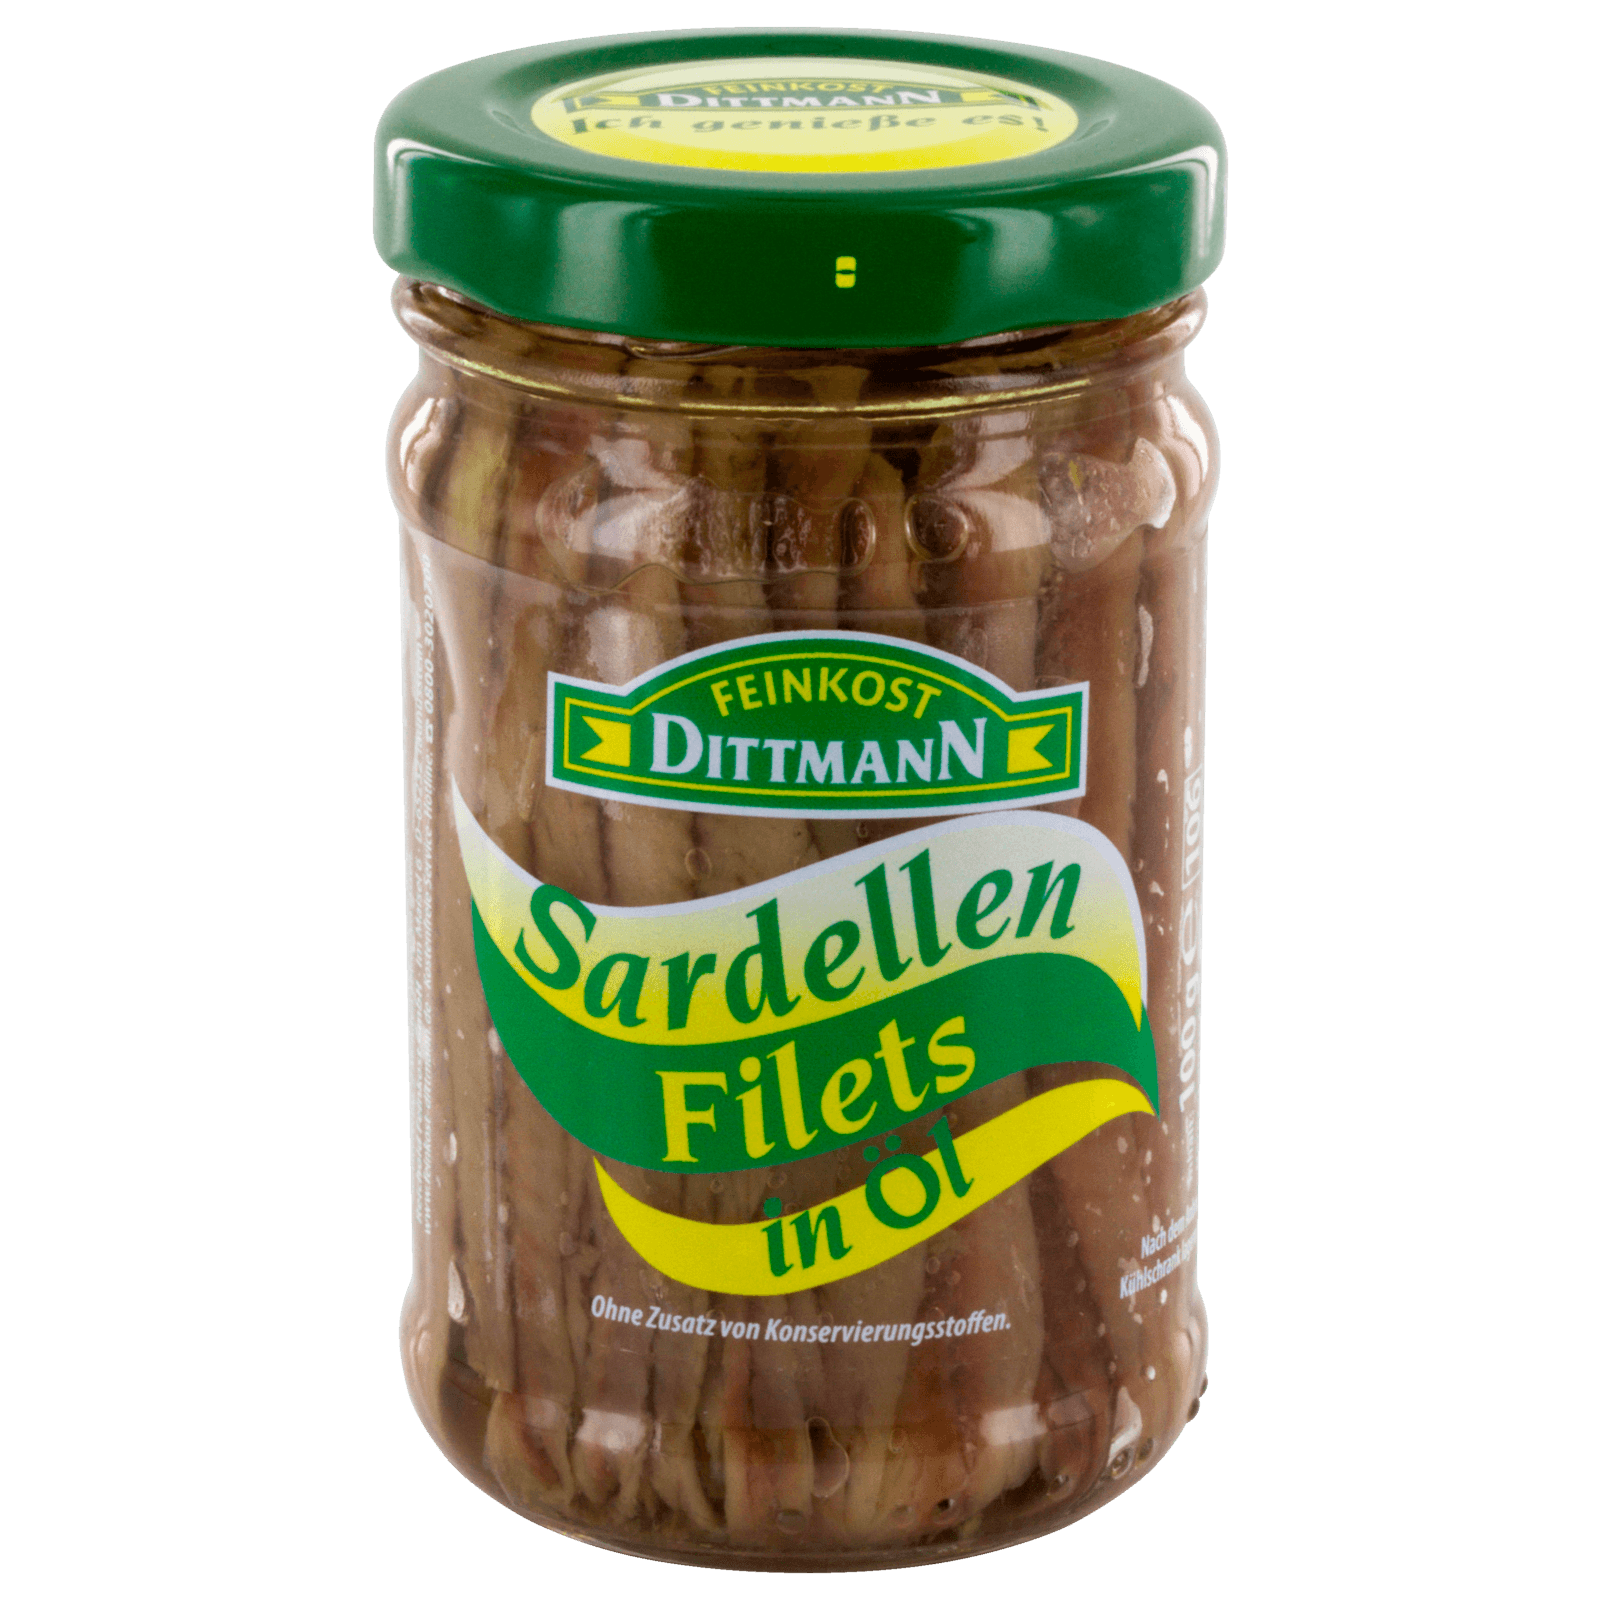 Dittman Sardellen-Filets in Öl 100g bei REWE online bestellen!